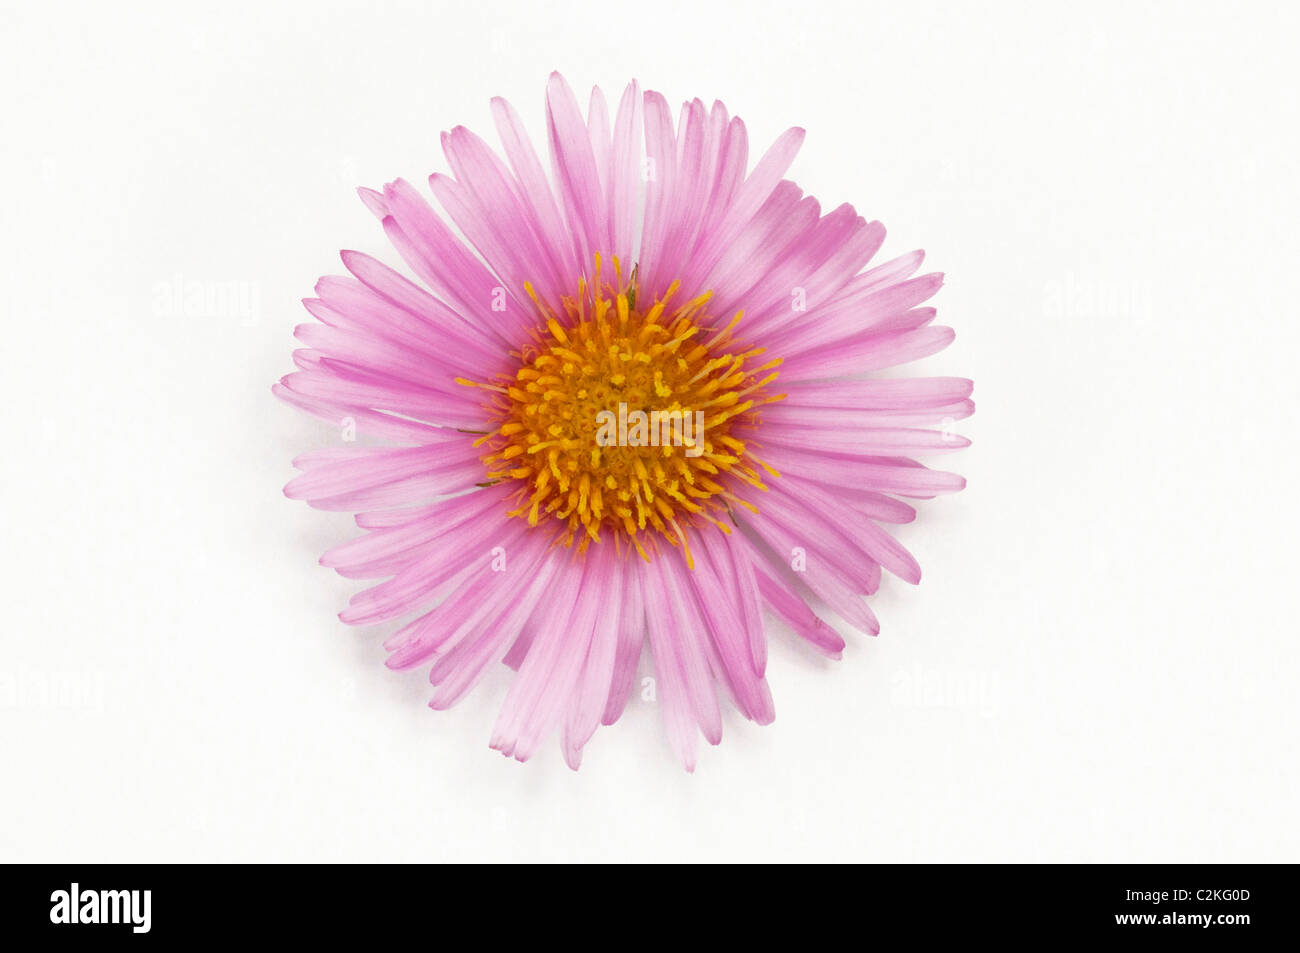 Garden Fleabane (Erigeron speciosus). Pink flower head, studio picture against a white background. Stock Photo